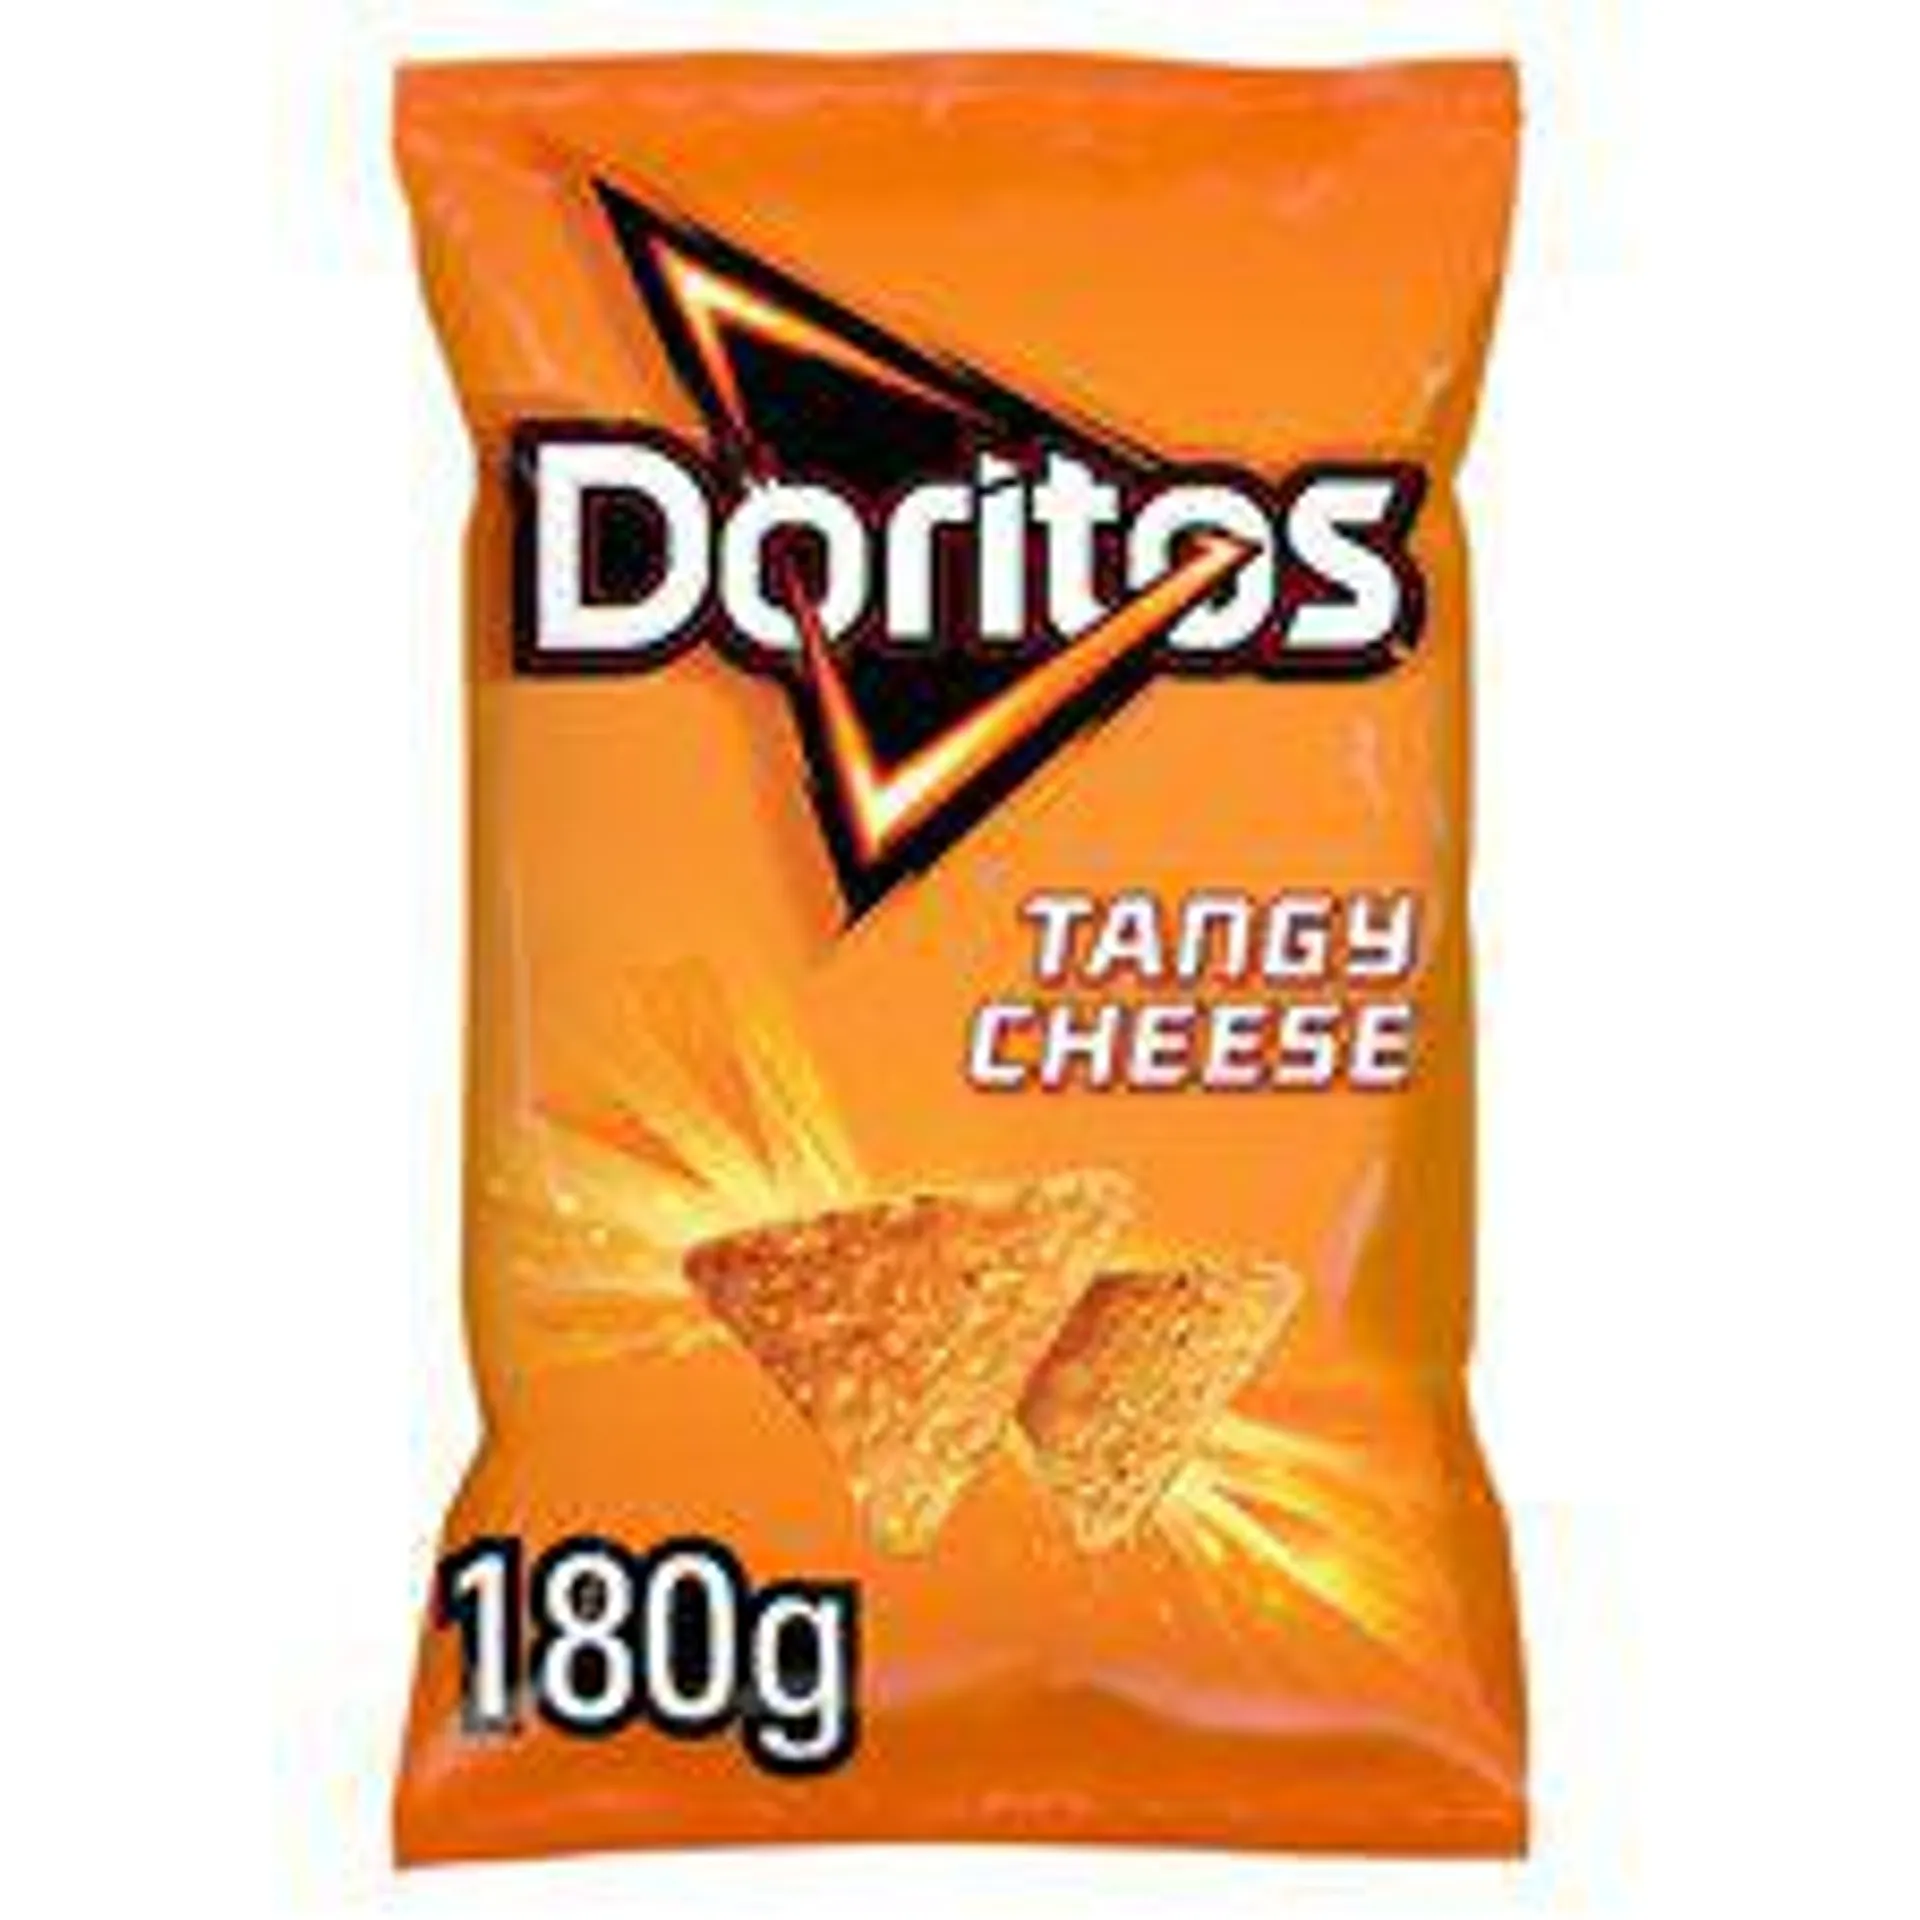 Doritos Tortilla Chips Tangy Cheese Sharing Bag Crisps 180g